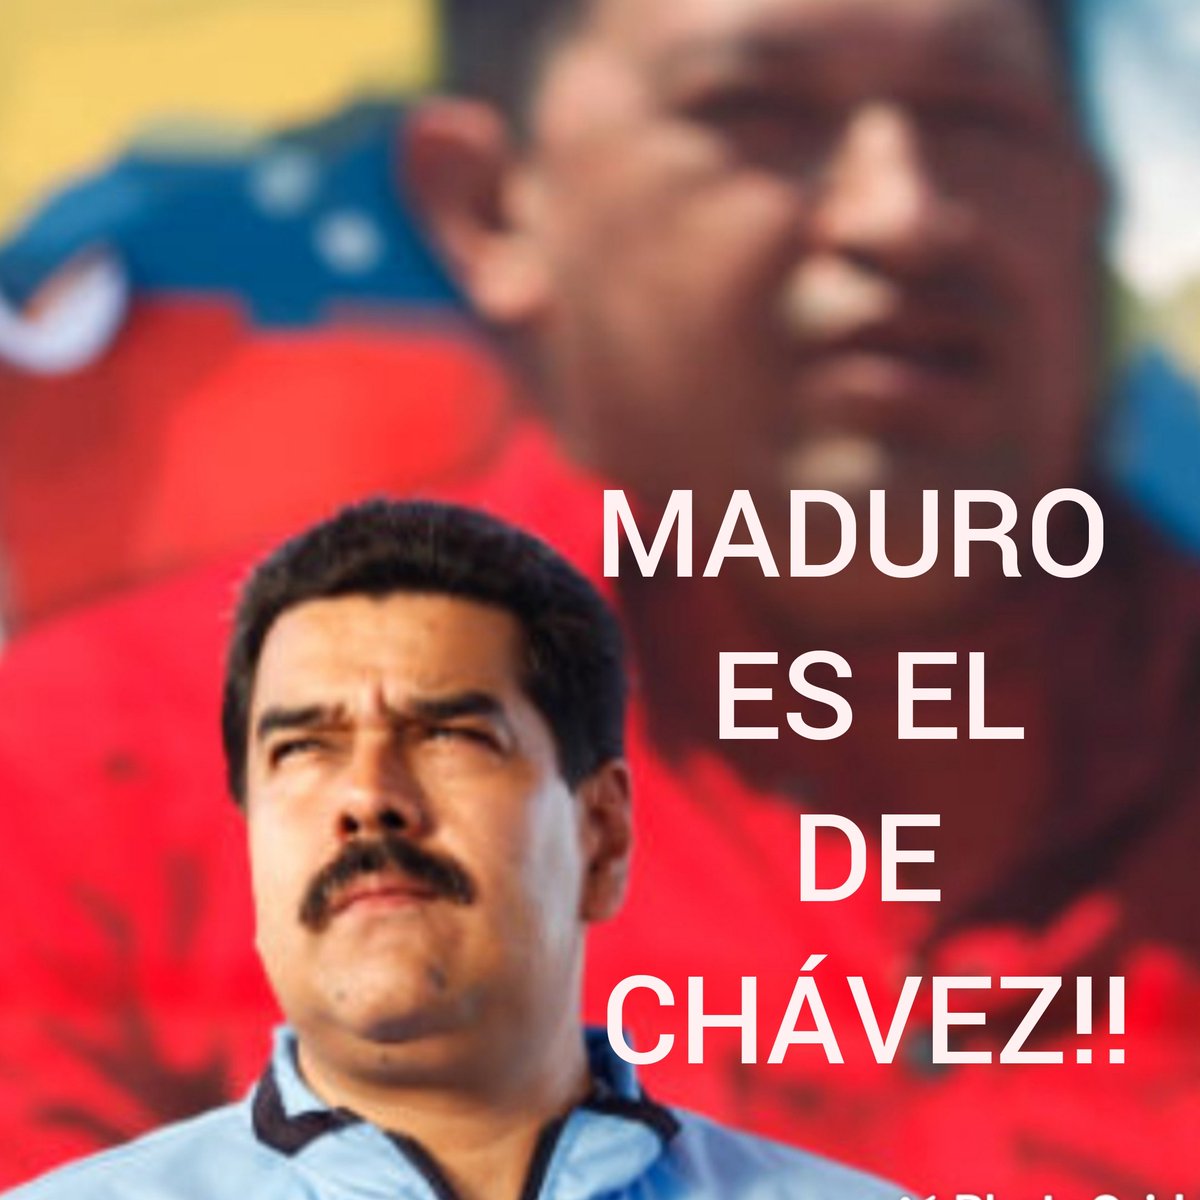 @IKandanga2 @dcabellor @ConElMazoDando A pura manipulación, en Ecuador, en Argentina, perdieron su patria! EN VENEZUELA NO VOLVERÁN!